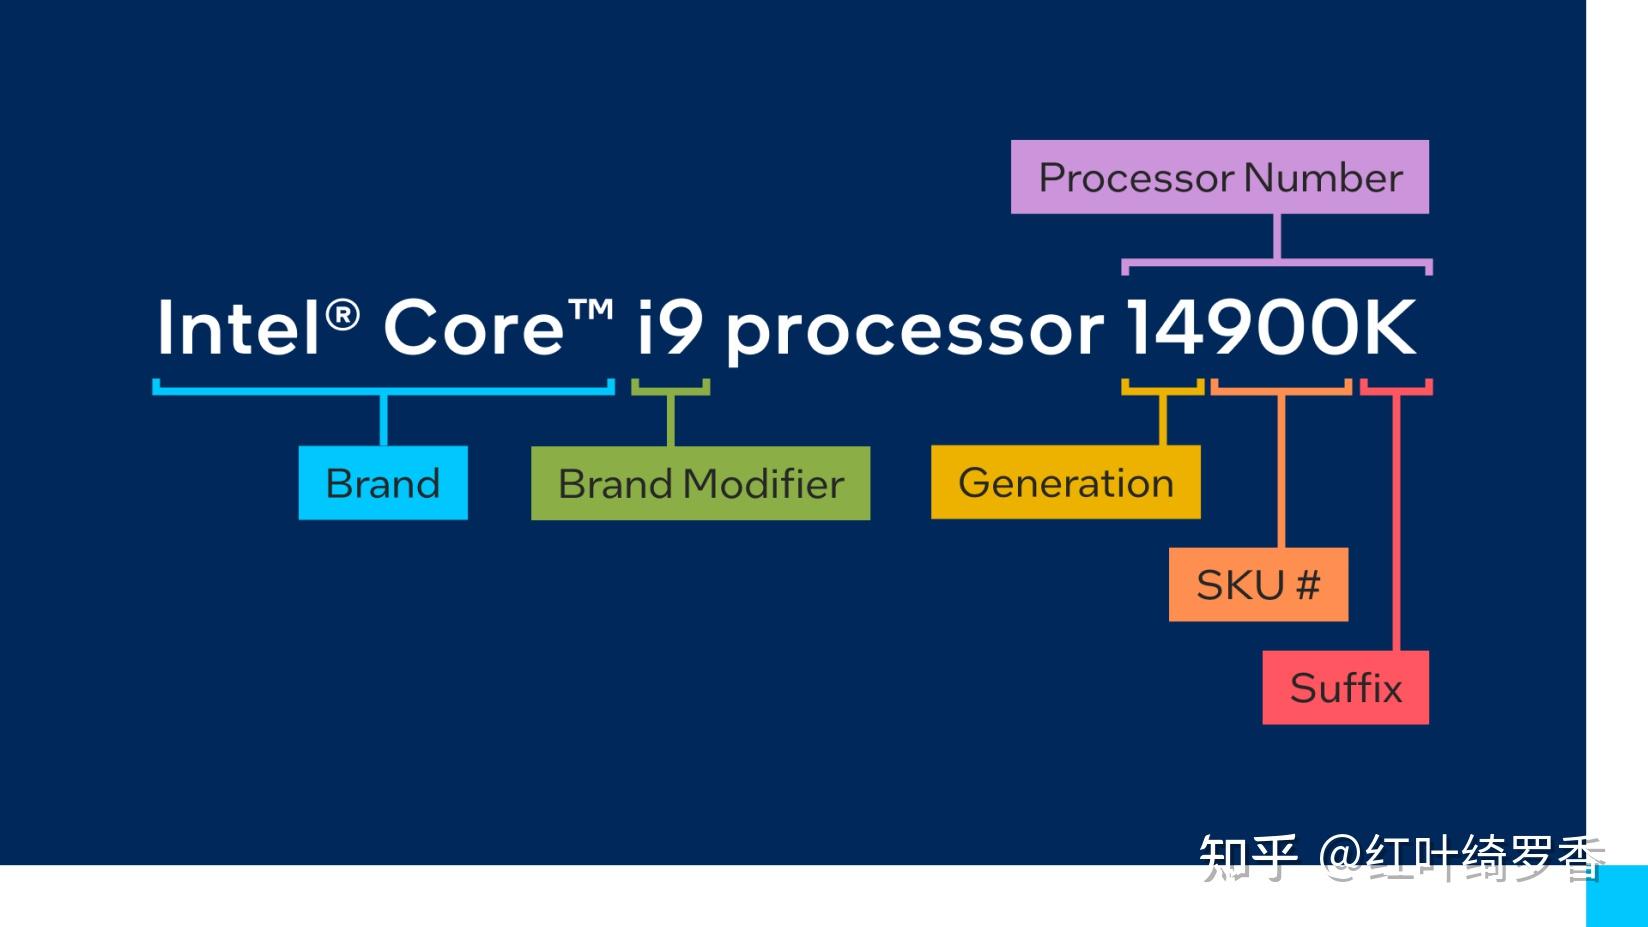 英特尔酷睿i5-9500F处理器性能全面解析：性能特性、适用场景与技术规格详解  第9张